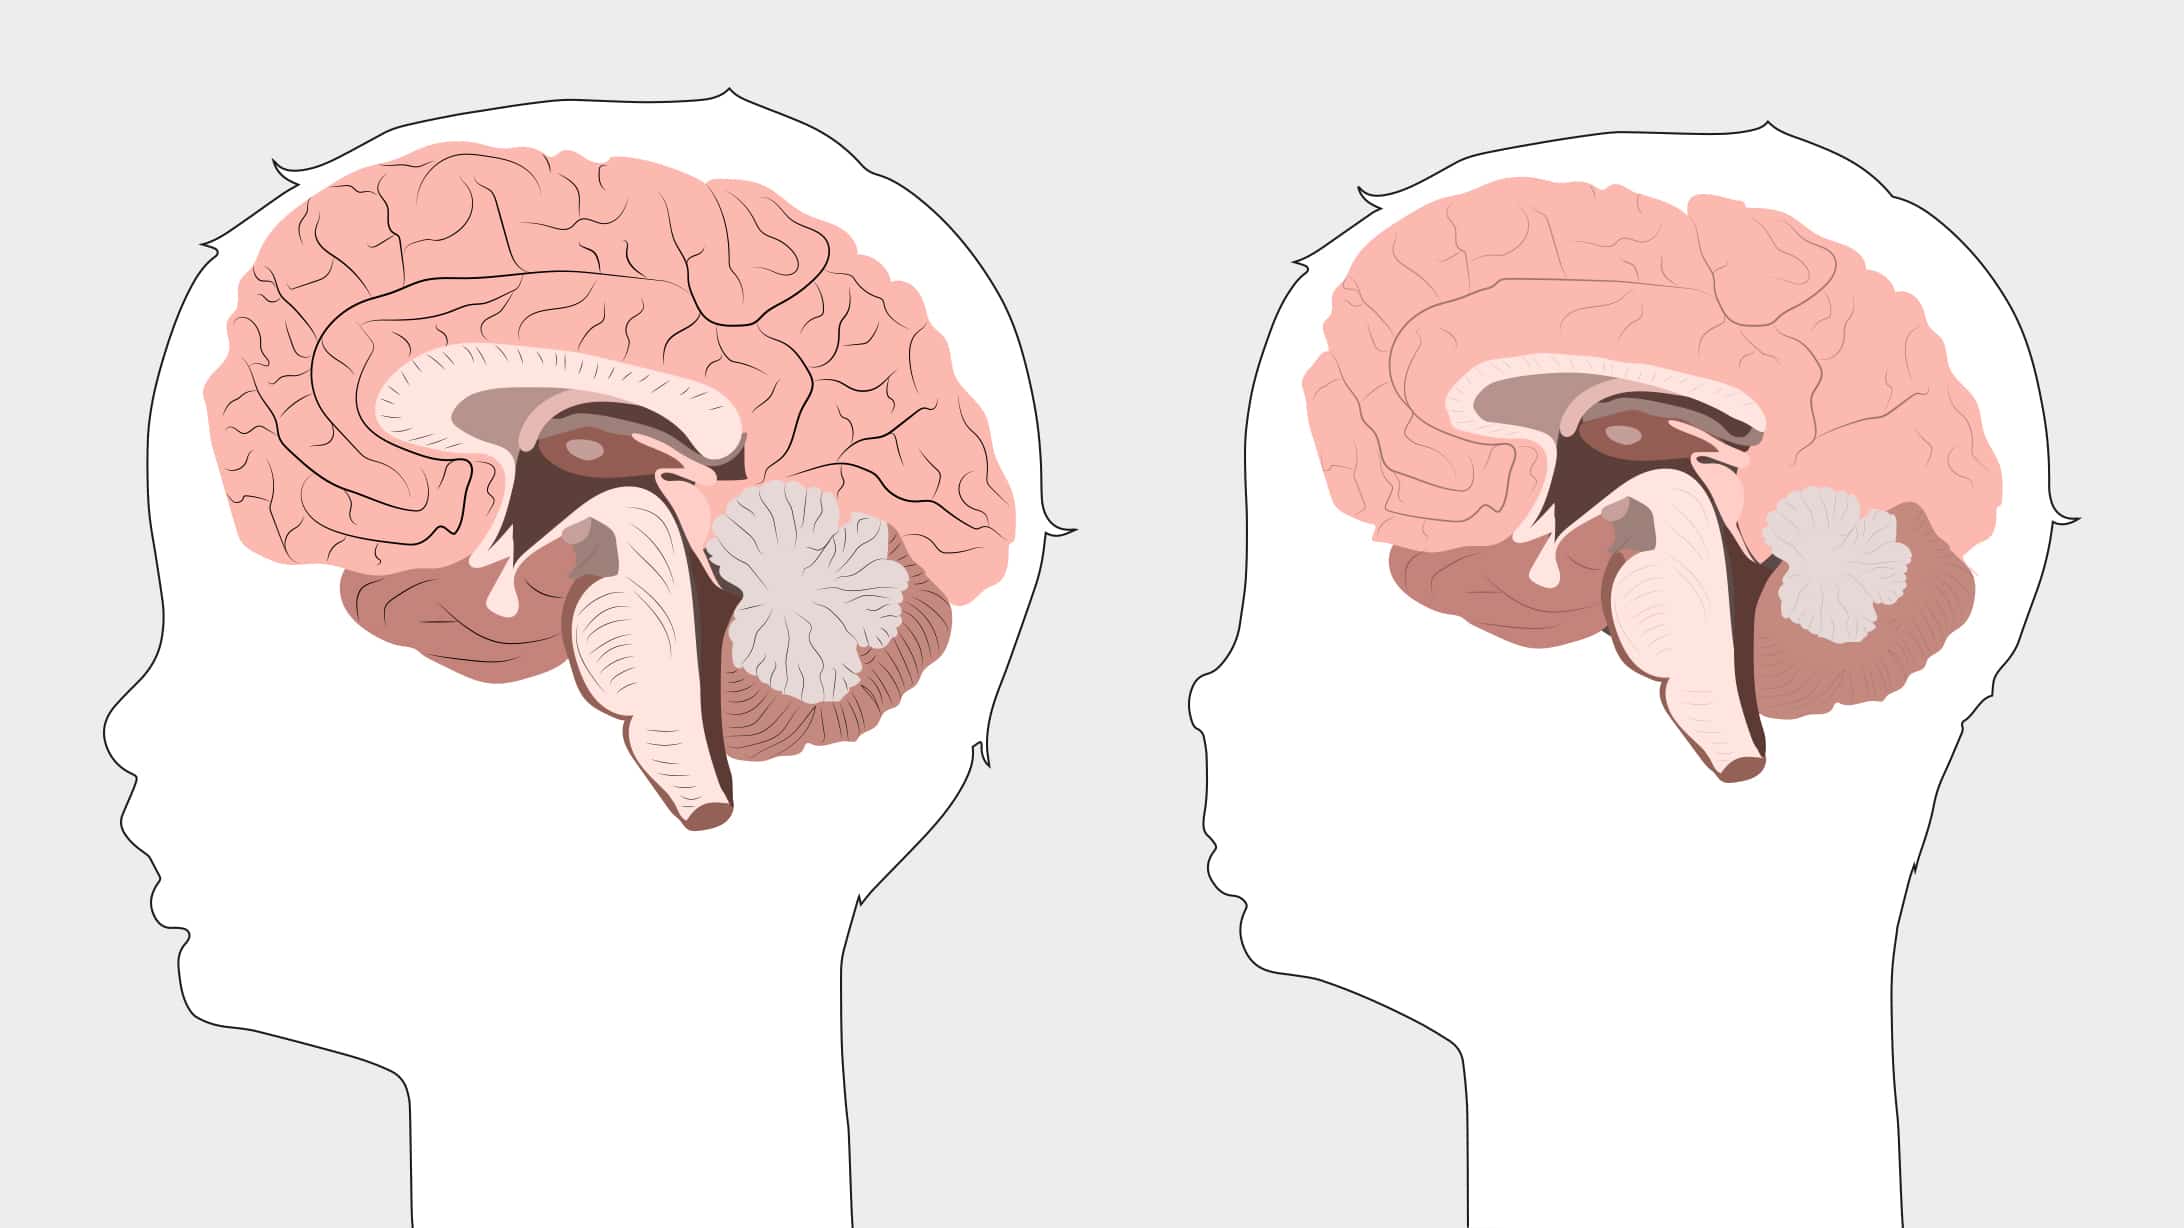 Alkohol und Schwangerschaft: Eine Illustration mit zwei seitlichen Querschnitten eines Neugeborenengehirns. Links ein normalentwickeltes Gehirn, rechts eines mit Schäden durch Alkoholkonsum der Mutter.